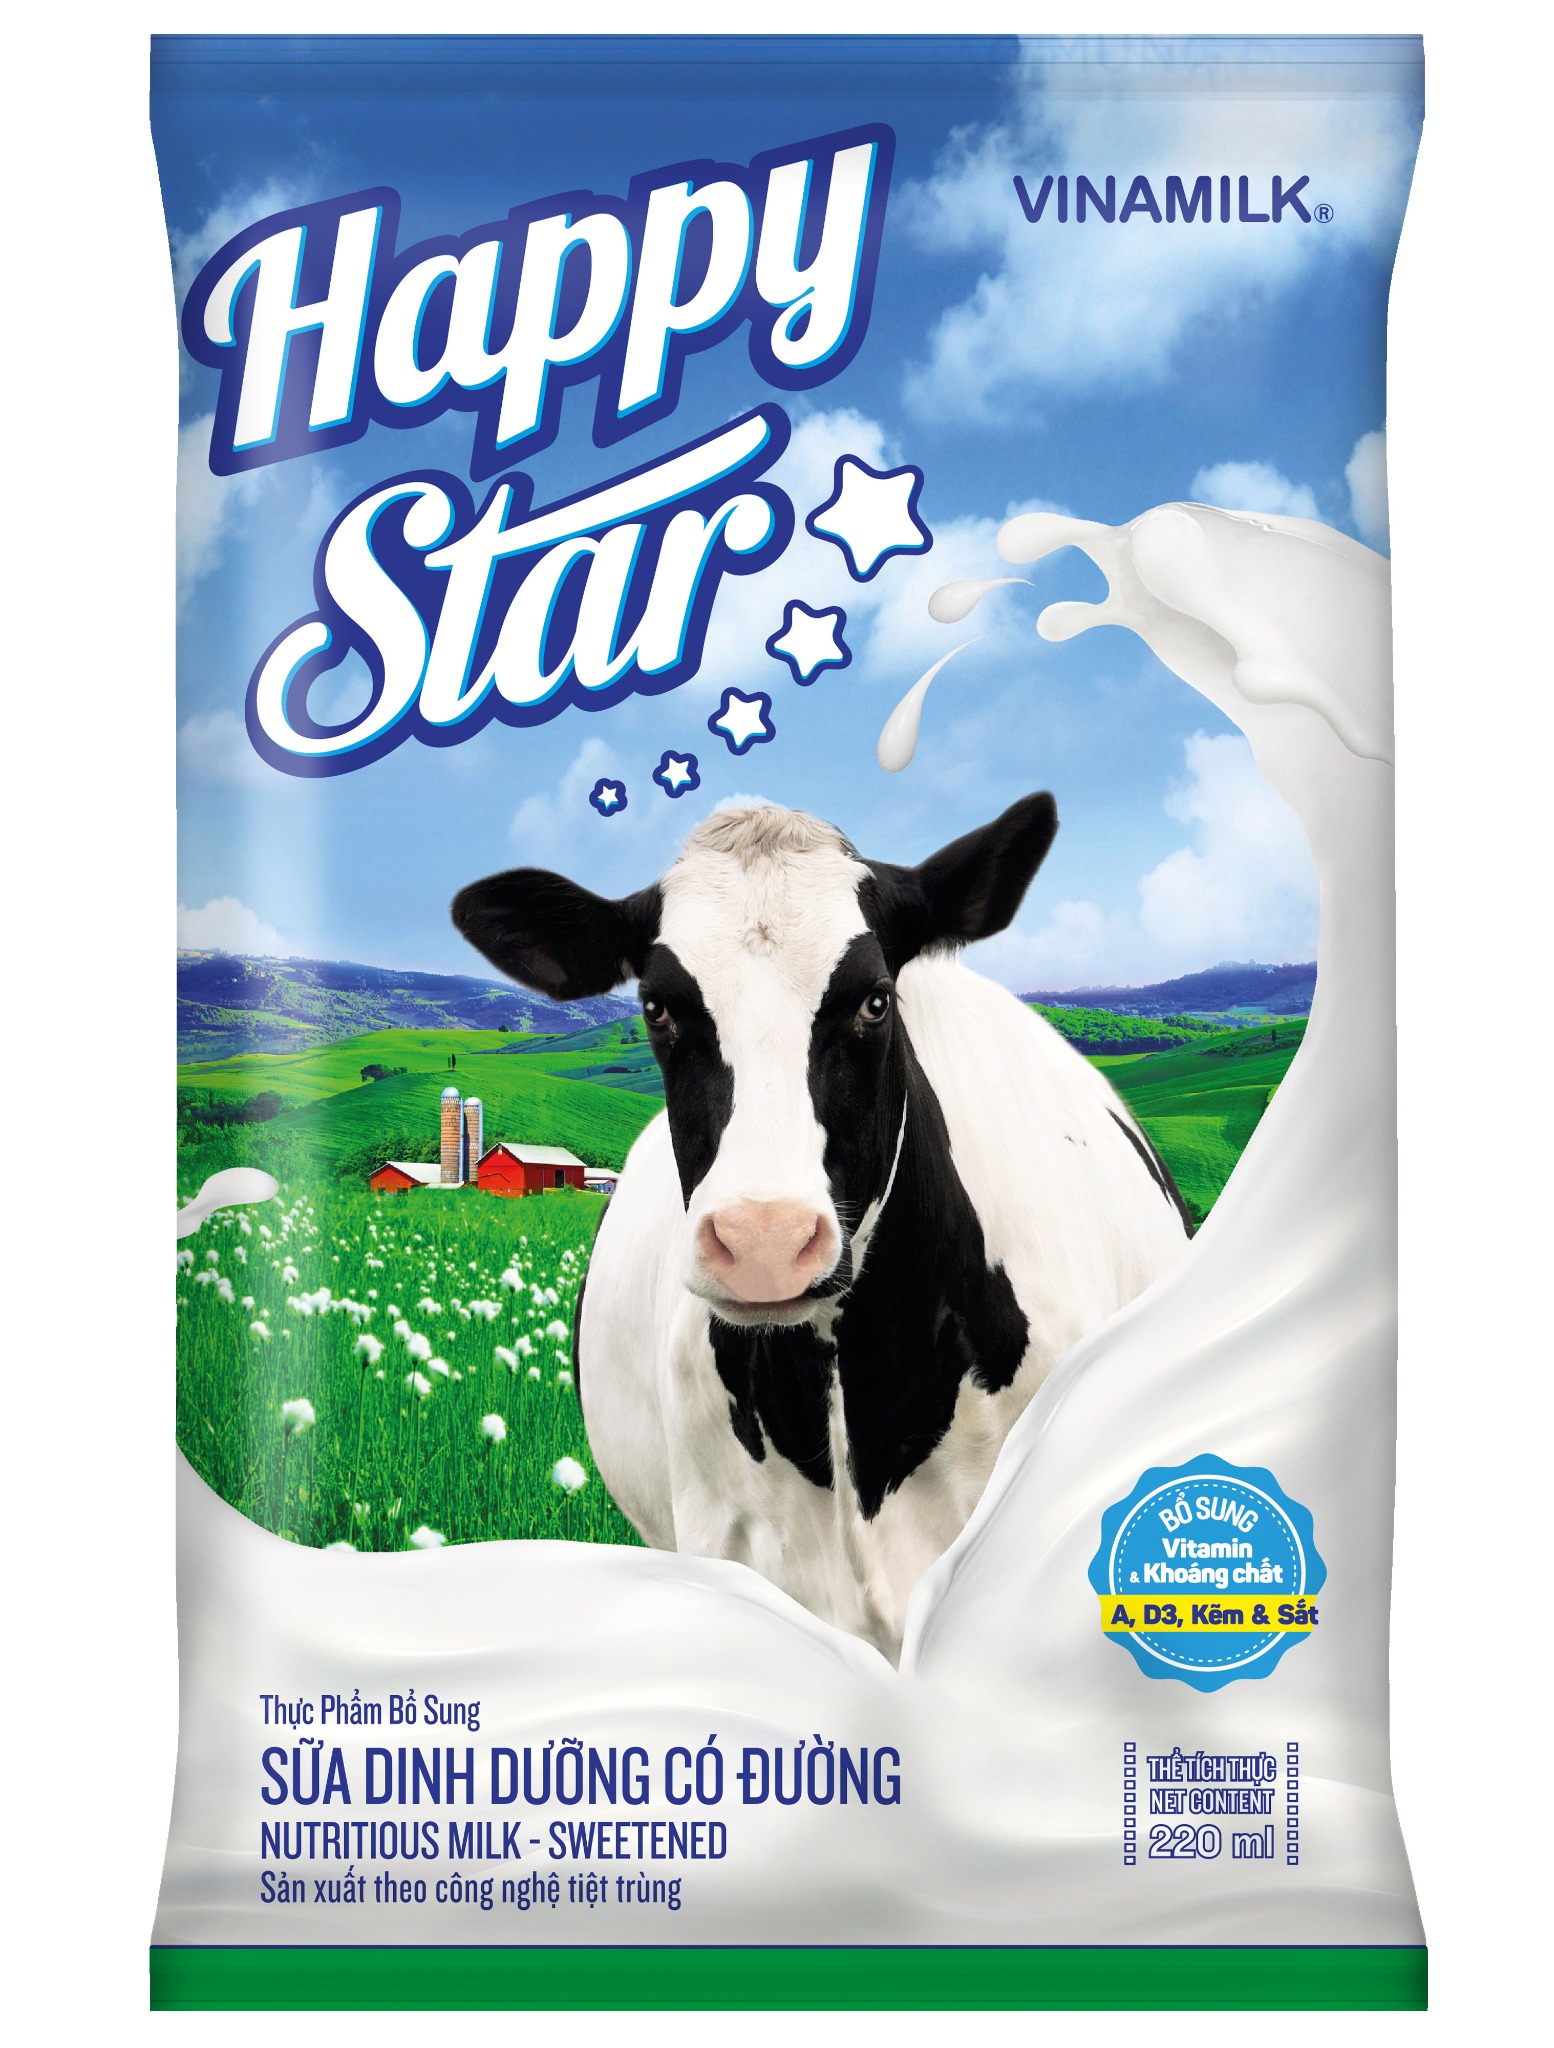 Sữa dinh dưỡng Vinamilk Happy Star có đường - Bịch 220ml